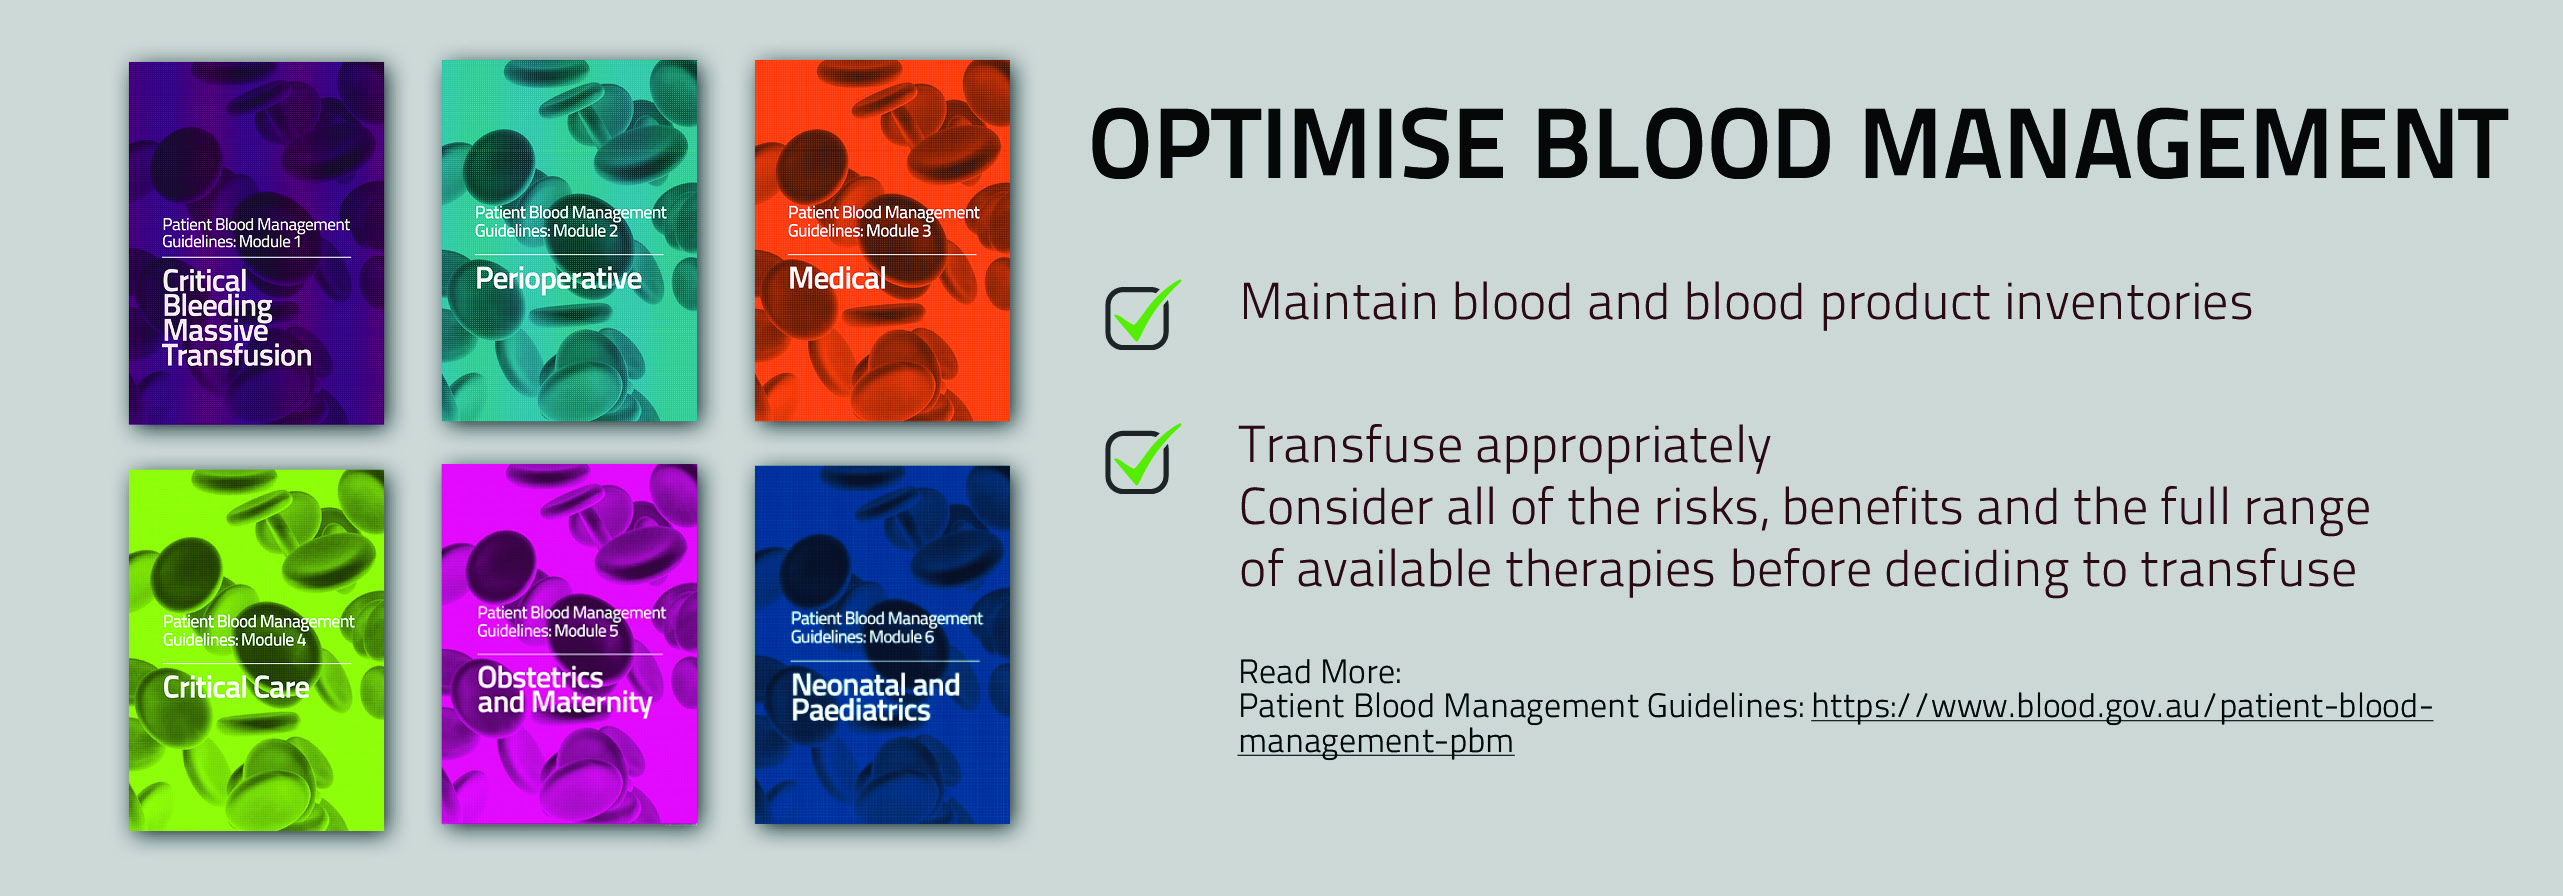 Optimise Blood Management banner